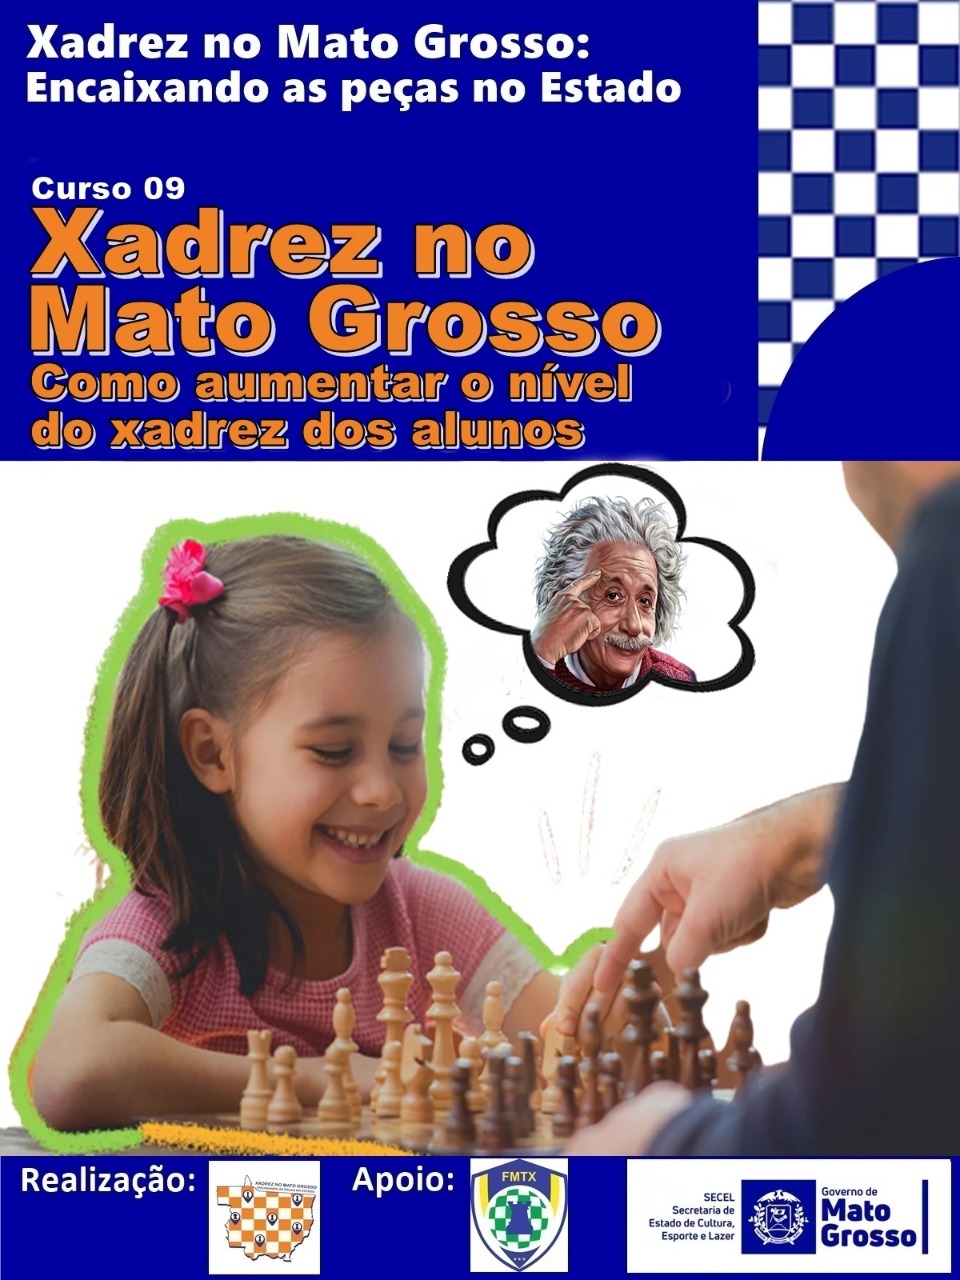 FMTX - Federação Mato-grossense de Xadrez